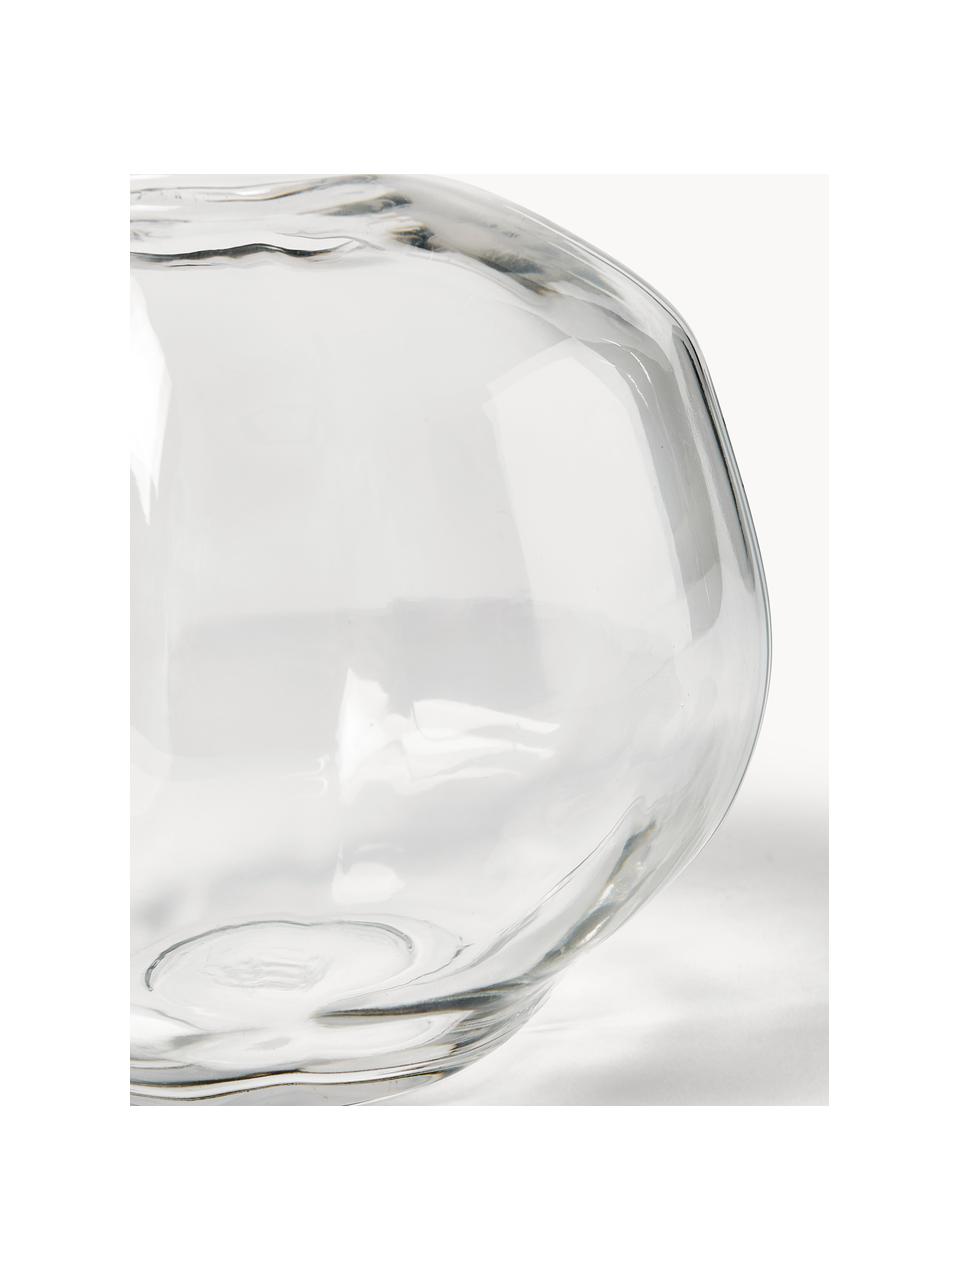 Jarrón de vidrio Pebble, Ø 28 cm, Vidrio, Transparente, Ø 28 x Al 28 cm